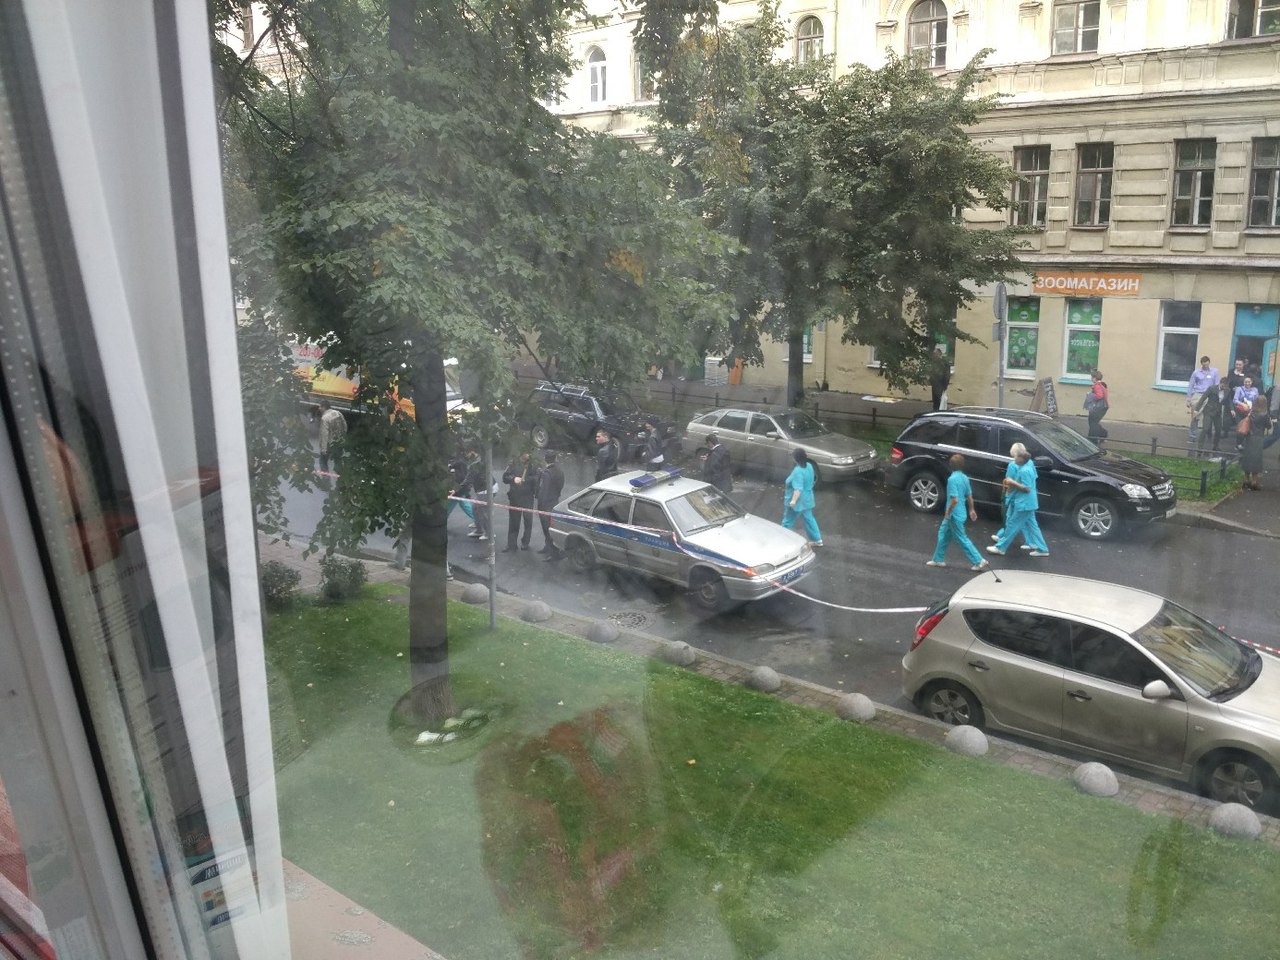 ТЦ Петербурга начали открывать после массовой эвакуации 